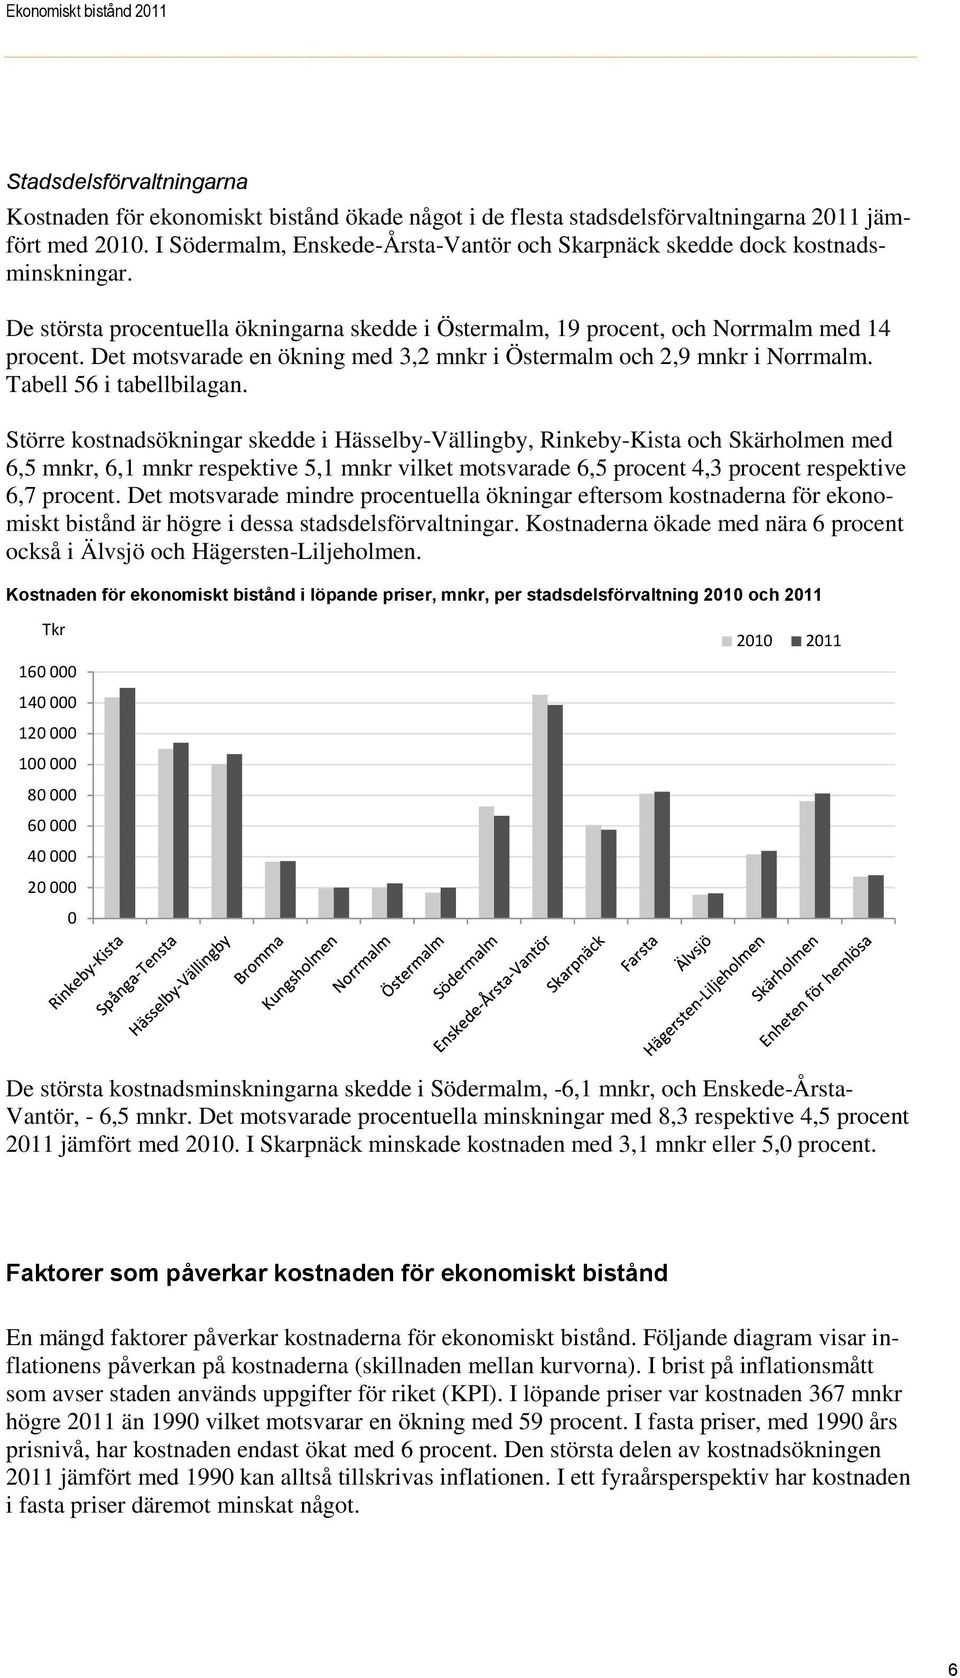 Det motsvarade en ökning med 3,2 mnkr i Östermalm och 2,9 mnkr i Norrmalm. Tabell 56 i tabellbilagan.